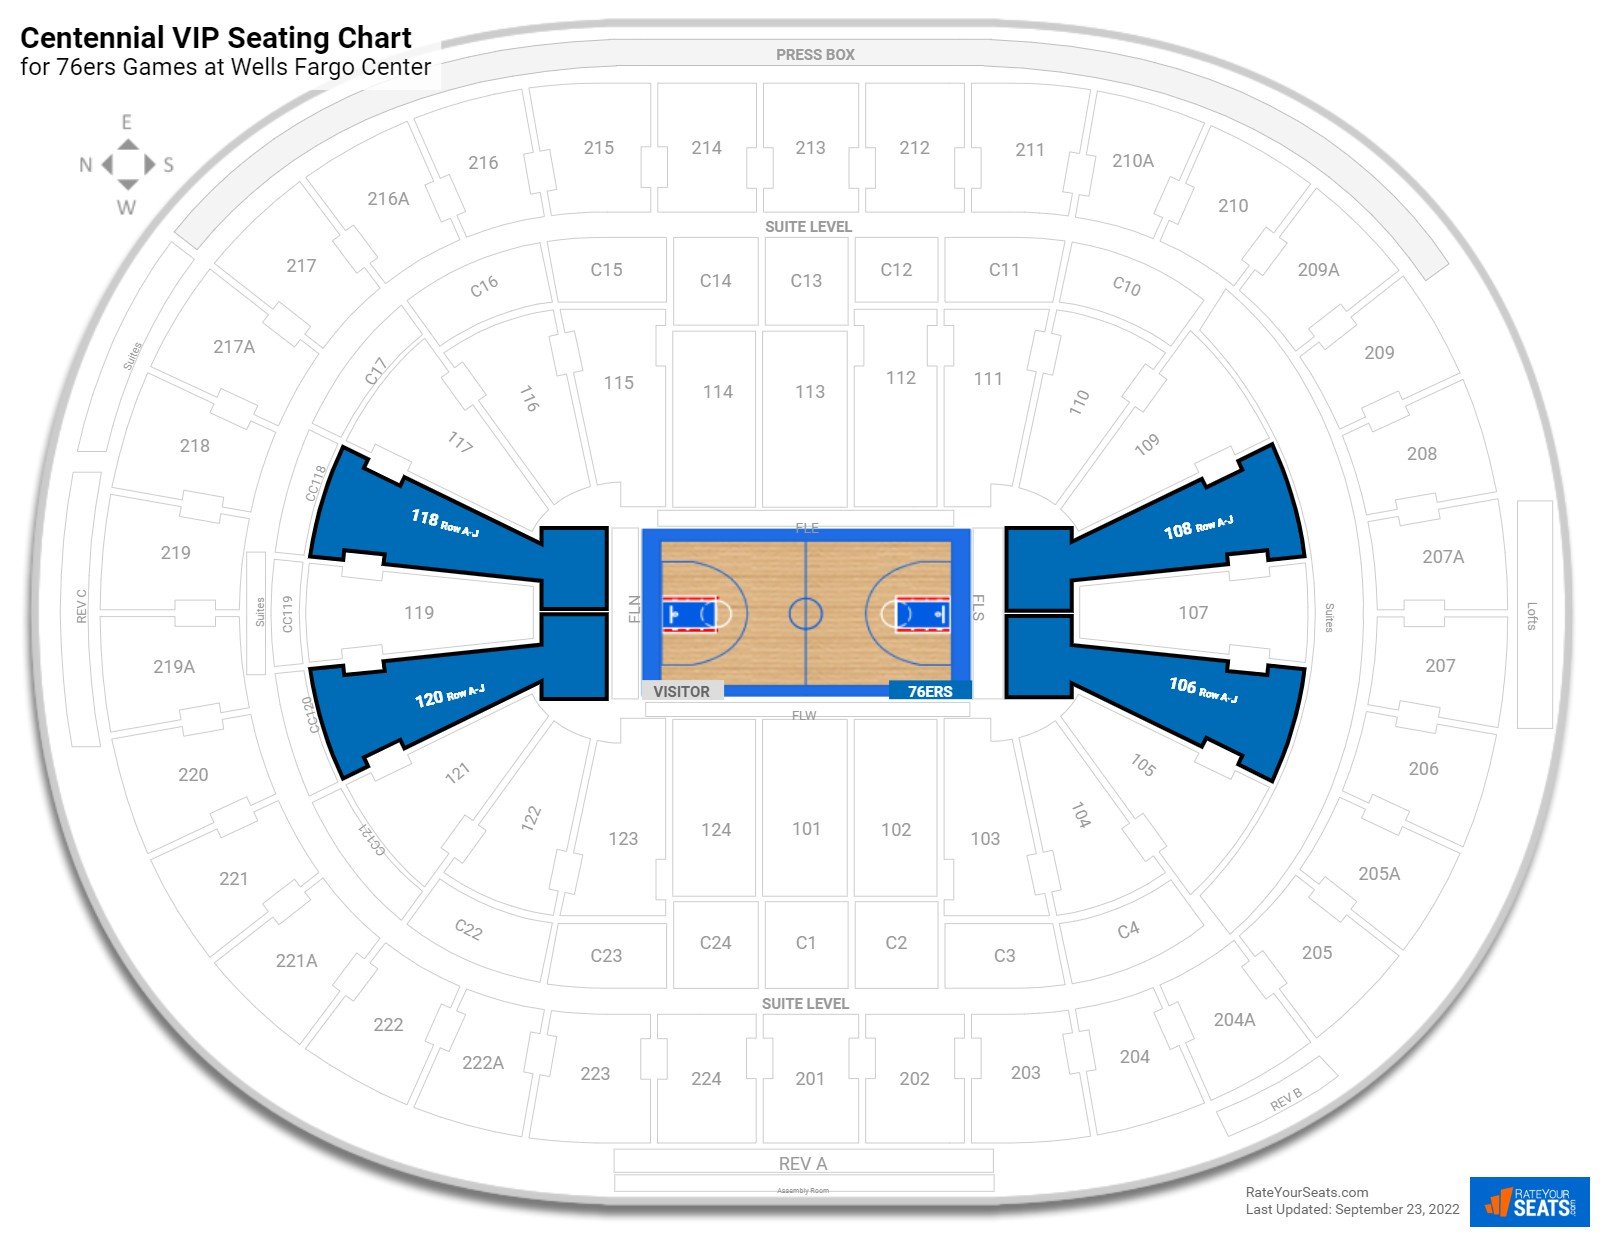 76ers Centennial VIP Seating Chart at Wells Fargo Center